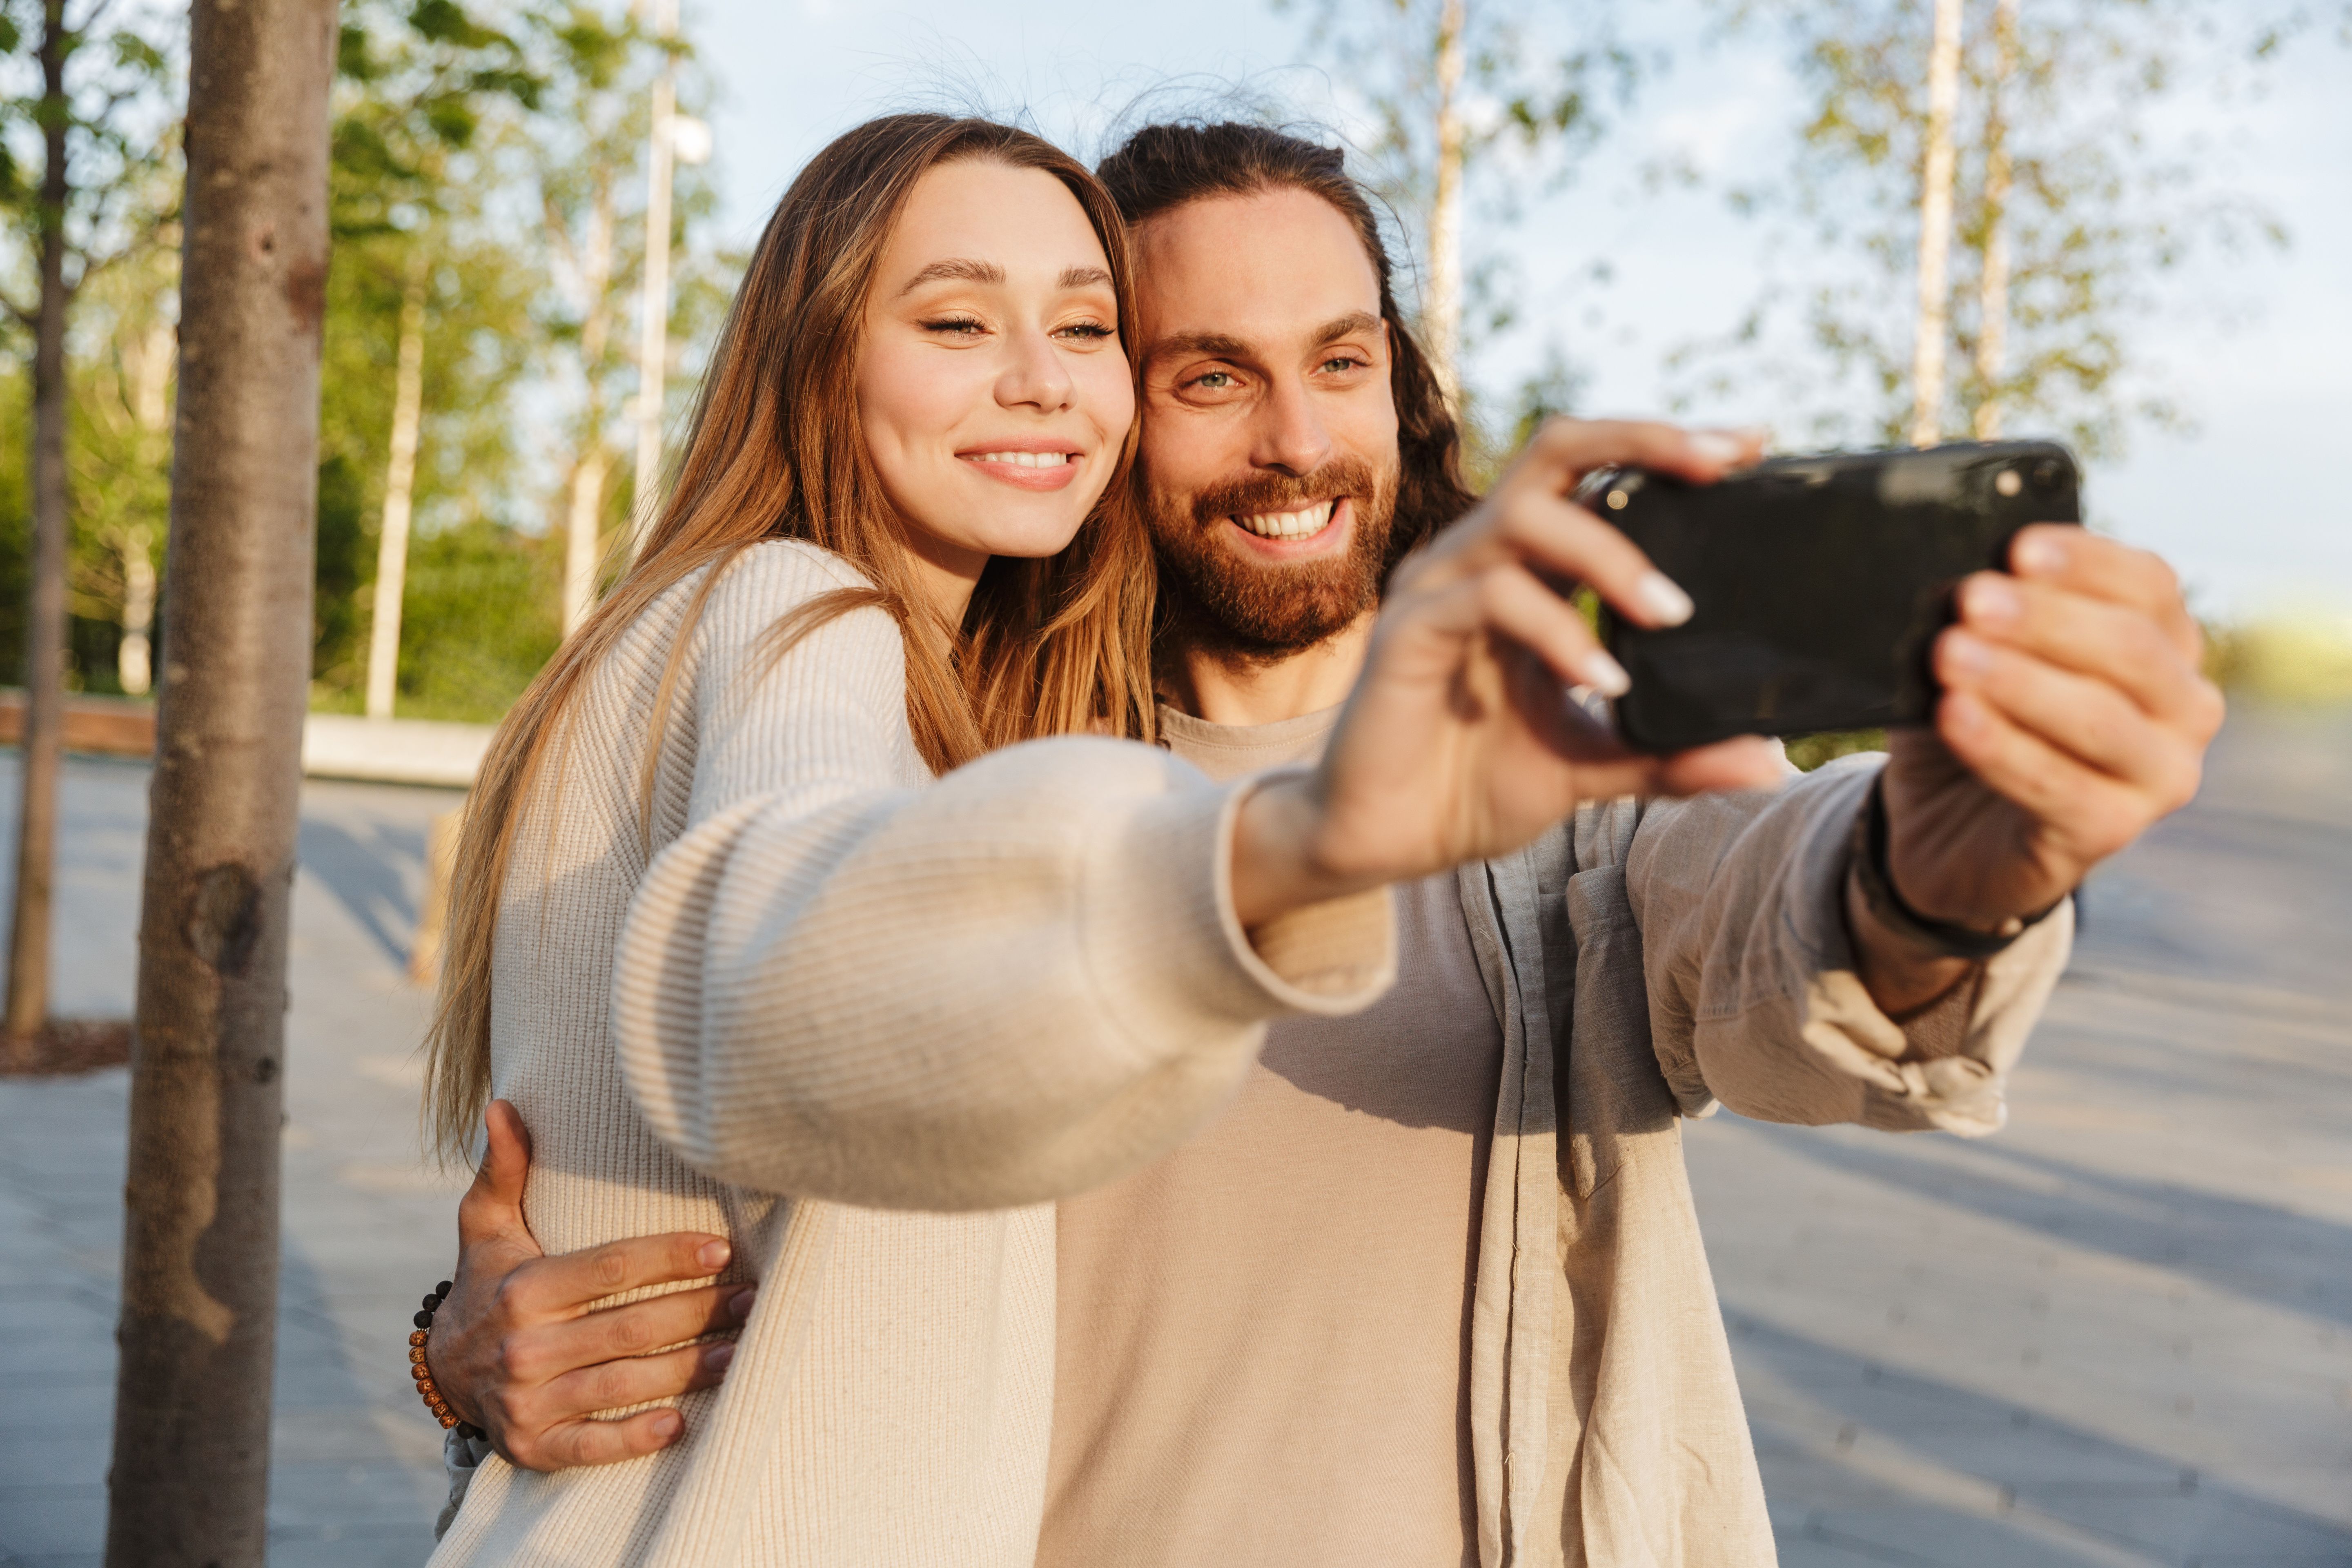 Ein Pärchen-Selfie kann Zufriedenheit ausdrücken, kann aber auch der Versuch sein, die Beziehung zu retten oder zu schützen.